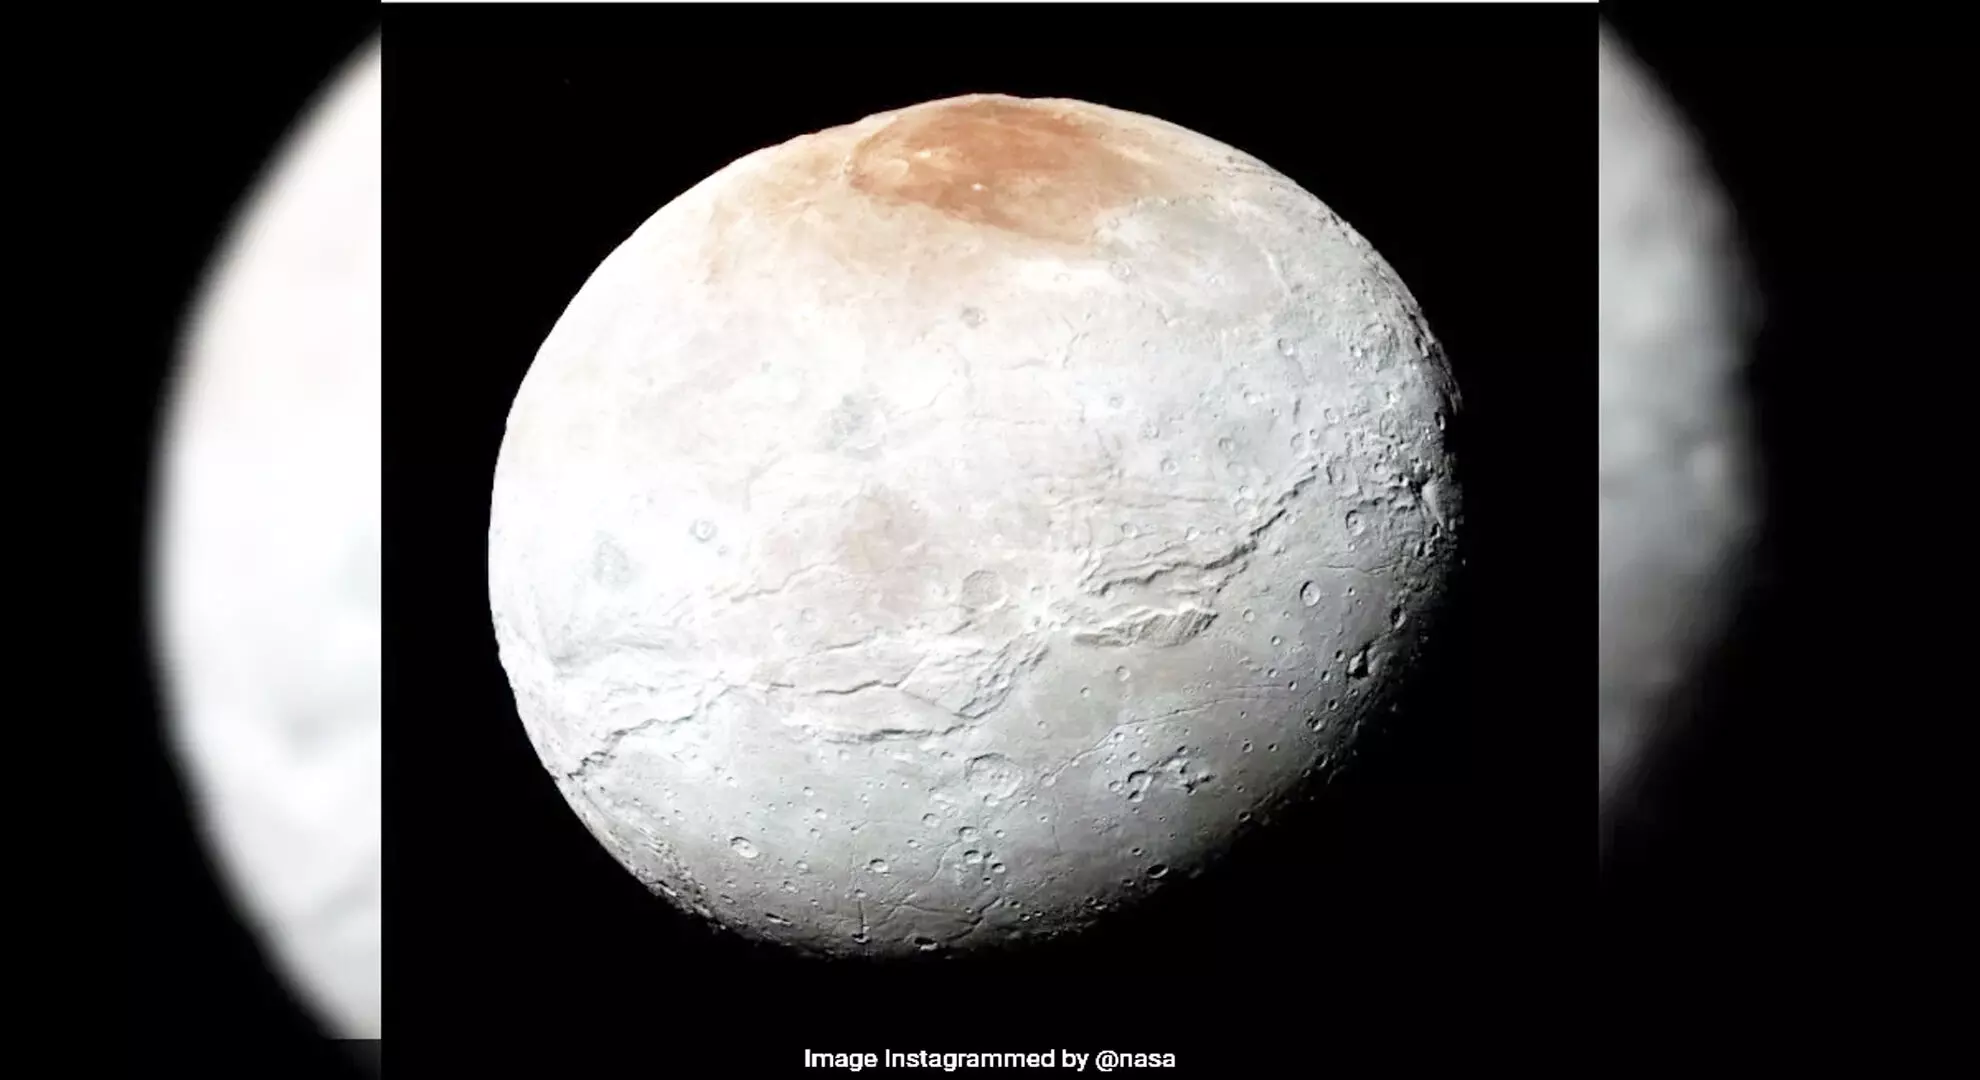 प्लैनेटरी बेस्टीज़: नासा ने प्लूटो के सबसे बड़े चंद्रमा चारोन की तस्वीर साझा की